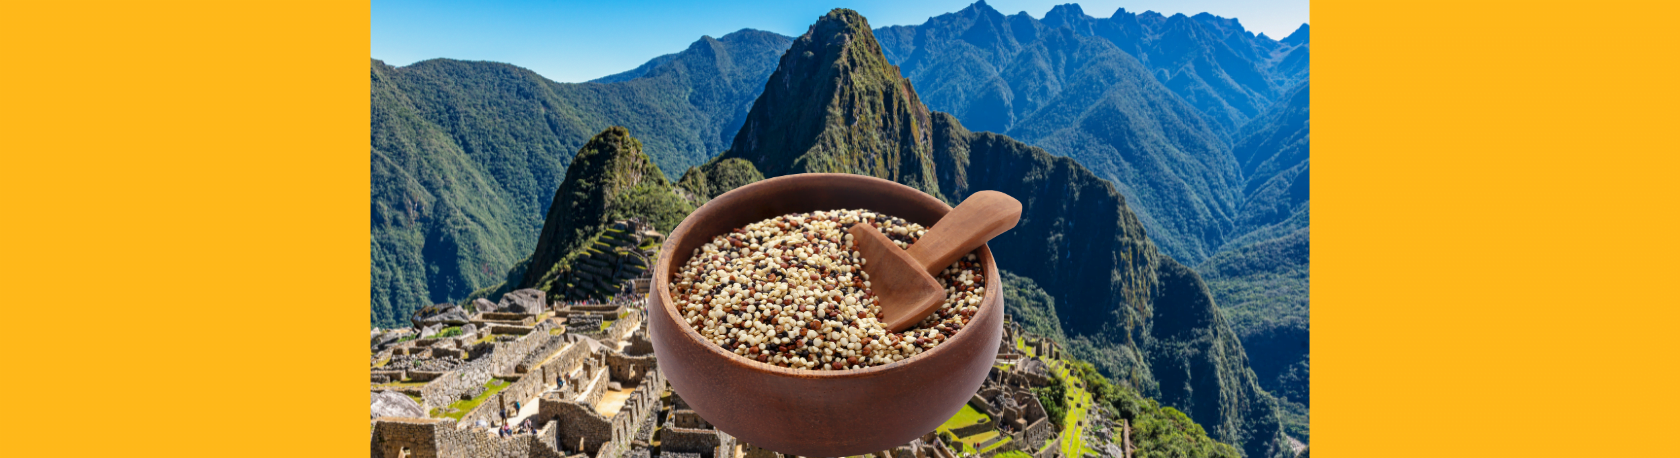 ¿Sabías que la quinua se conoce también como el 'grano madre' de los incas? - Easy Español